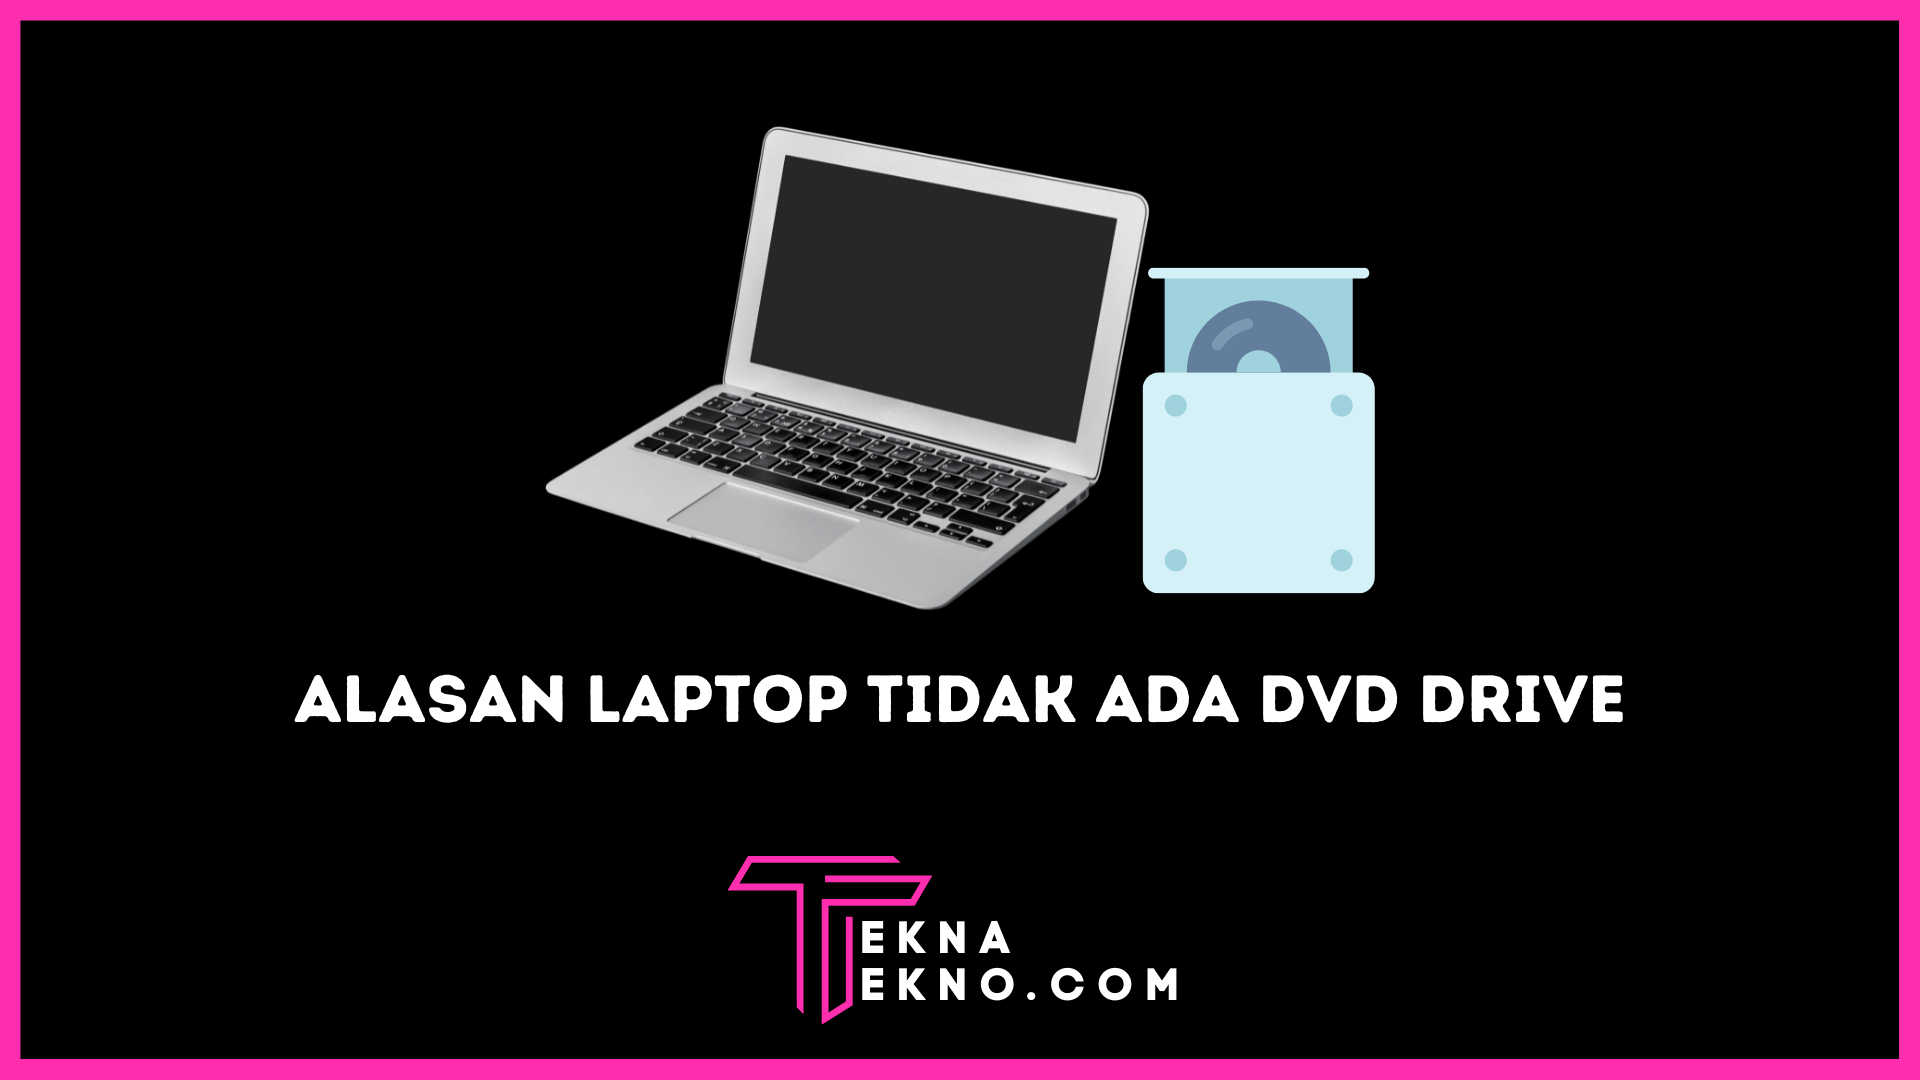 Alasan Laptop Terbaru Tidak Memiliki Fitur DVD Drive